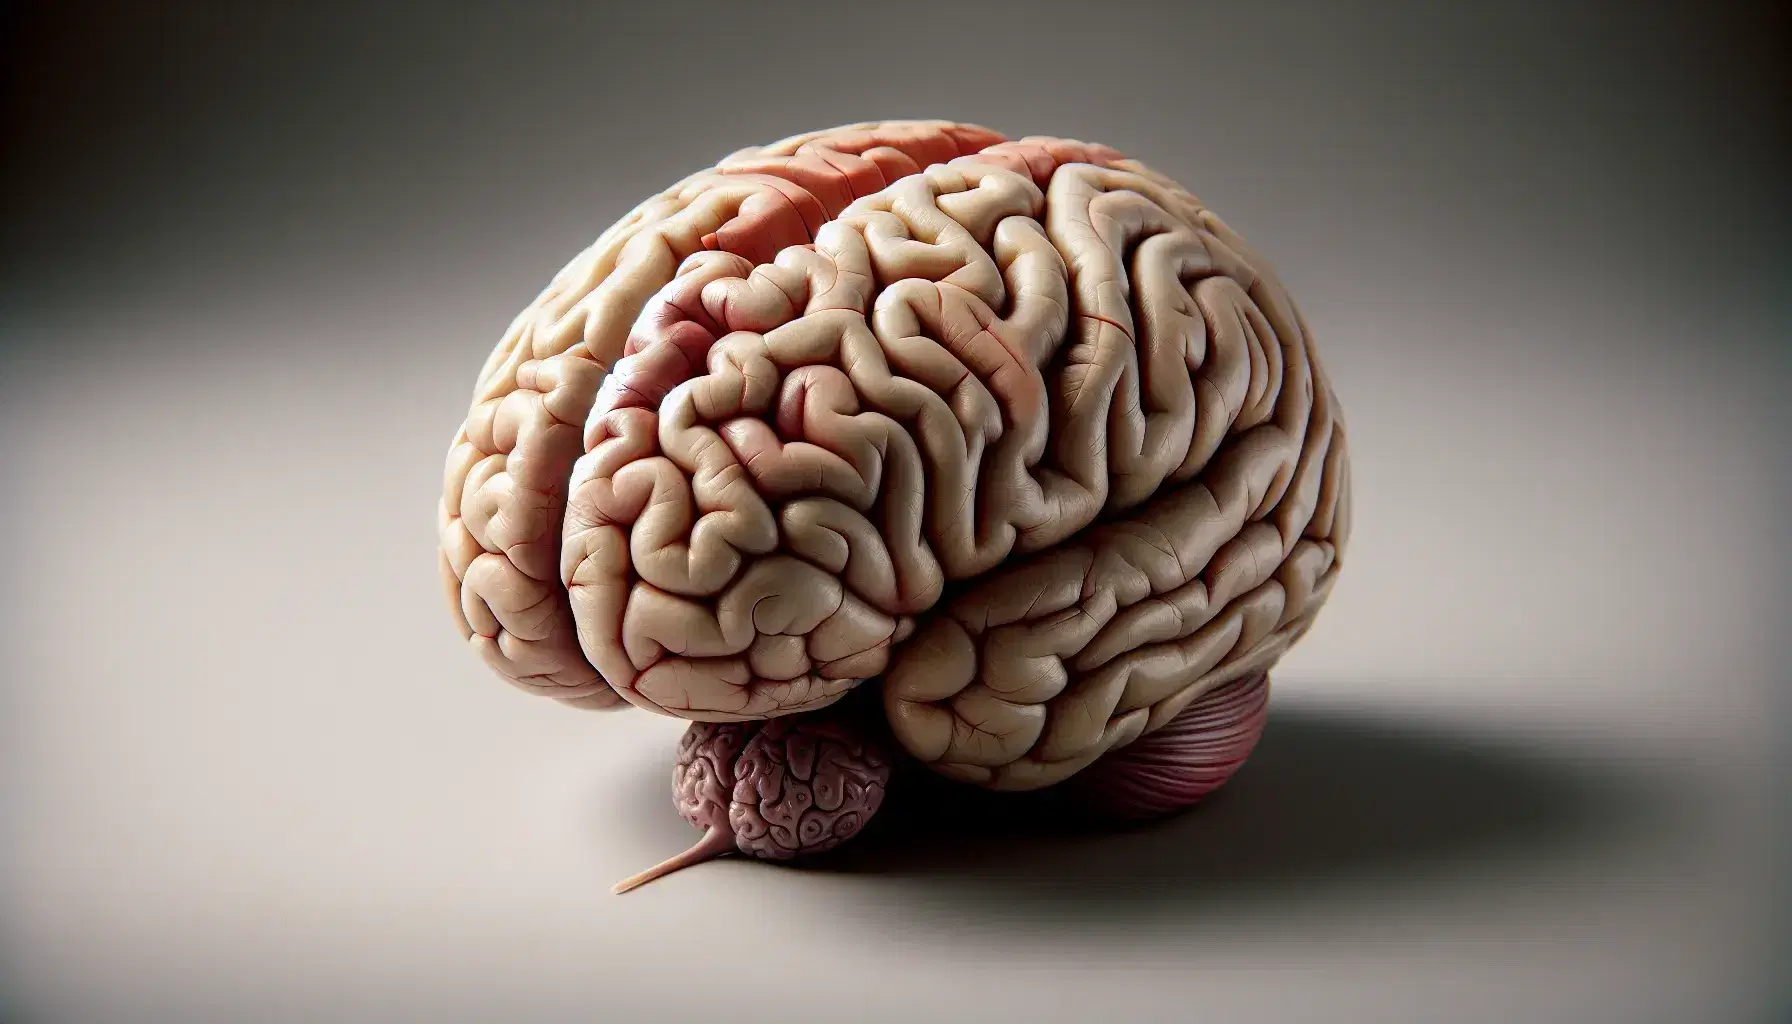 Modelo anatómico detallado de un cerebro humano con sus surcos y regiones visibles, y una glándula pituitaria conectada, sobre superficie neutra.